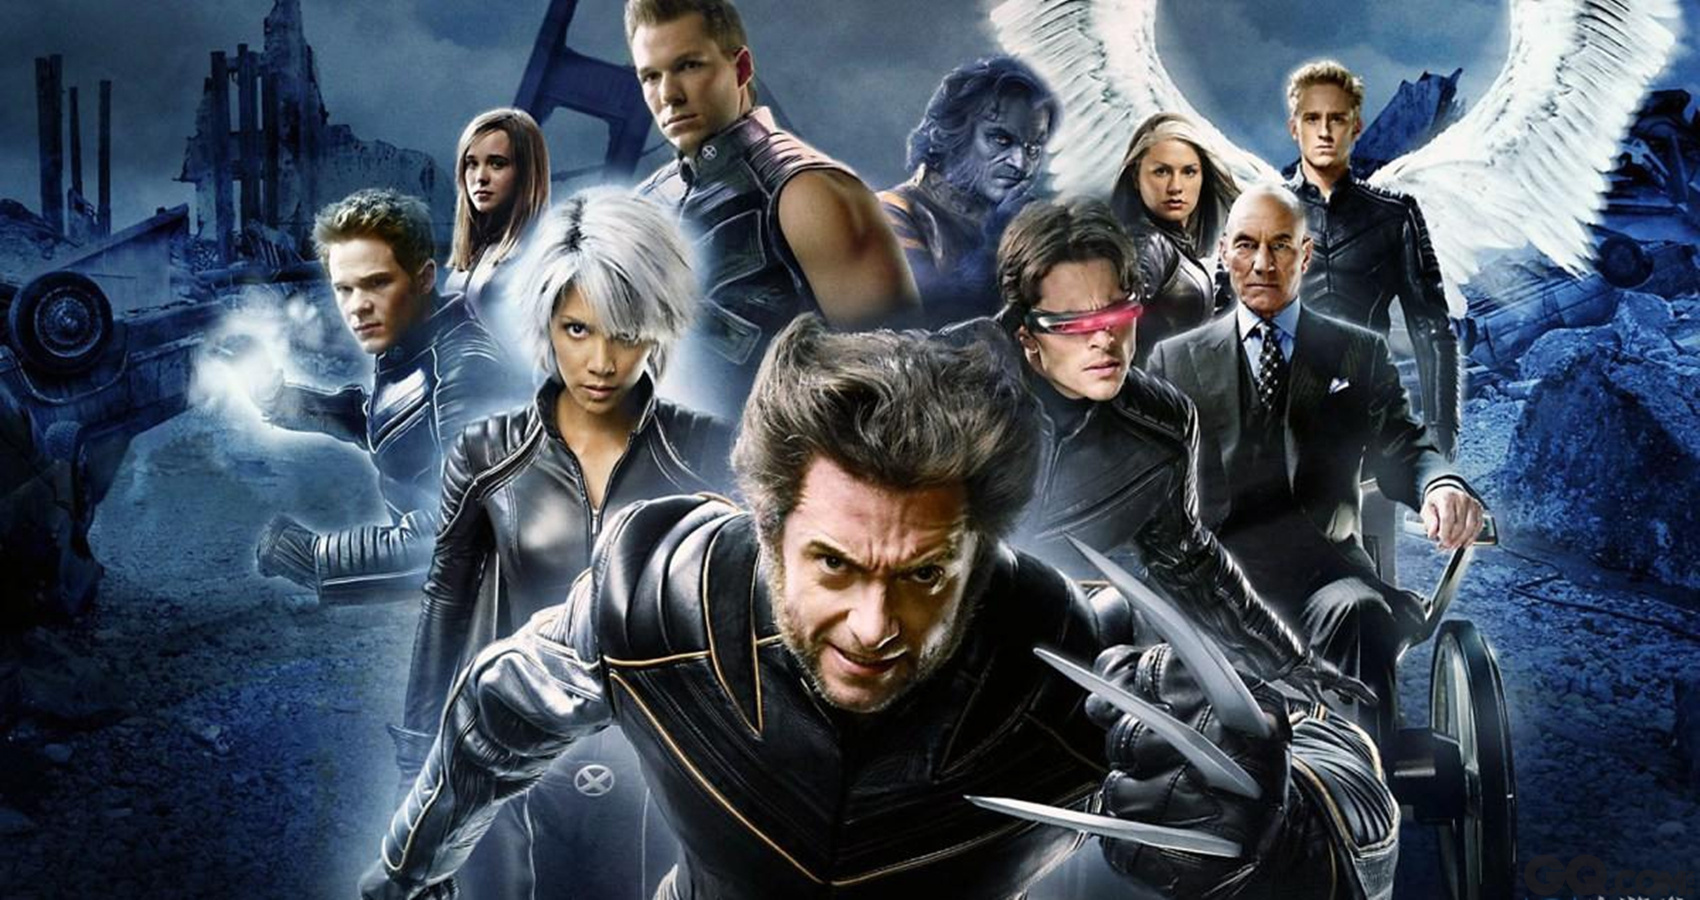 从马修·沃恩 （Matthew Vaughn）接手执导全新X战警系列电影的布莱恩·辛格（Bryan Singer）几乎打造了一个“X战警”的复仇者联盟阵容规模，不仅仅包括了《X战警：第一战》（X-Men : First Class）的主要演员，先前三部曲的角色也因为时空交错而全数回归，造成新旧X教授、万磁王、暴风女、小淘气、冰人再次出现于大银幕前；不过这部片几 乎重新开启了X战警电影的时间线，之后会如何发展令人期待。演员阵容有：休·杰克曼（Hugh Jackman）、迈克尔·法斯宾德（Michael Fassbender）、艾伦·佩吉（Ellen Page）、哈莉·贝瑞（Halle Berry）、詹妮弗·劳伦斯（Jennifer Lawrence）、詹姆斯·麦卡沃伊（James McAvoy）、还有中国女神范冰冰。